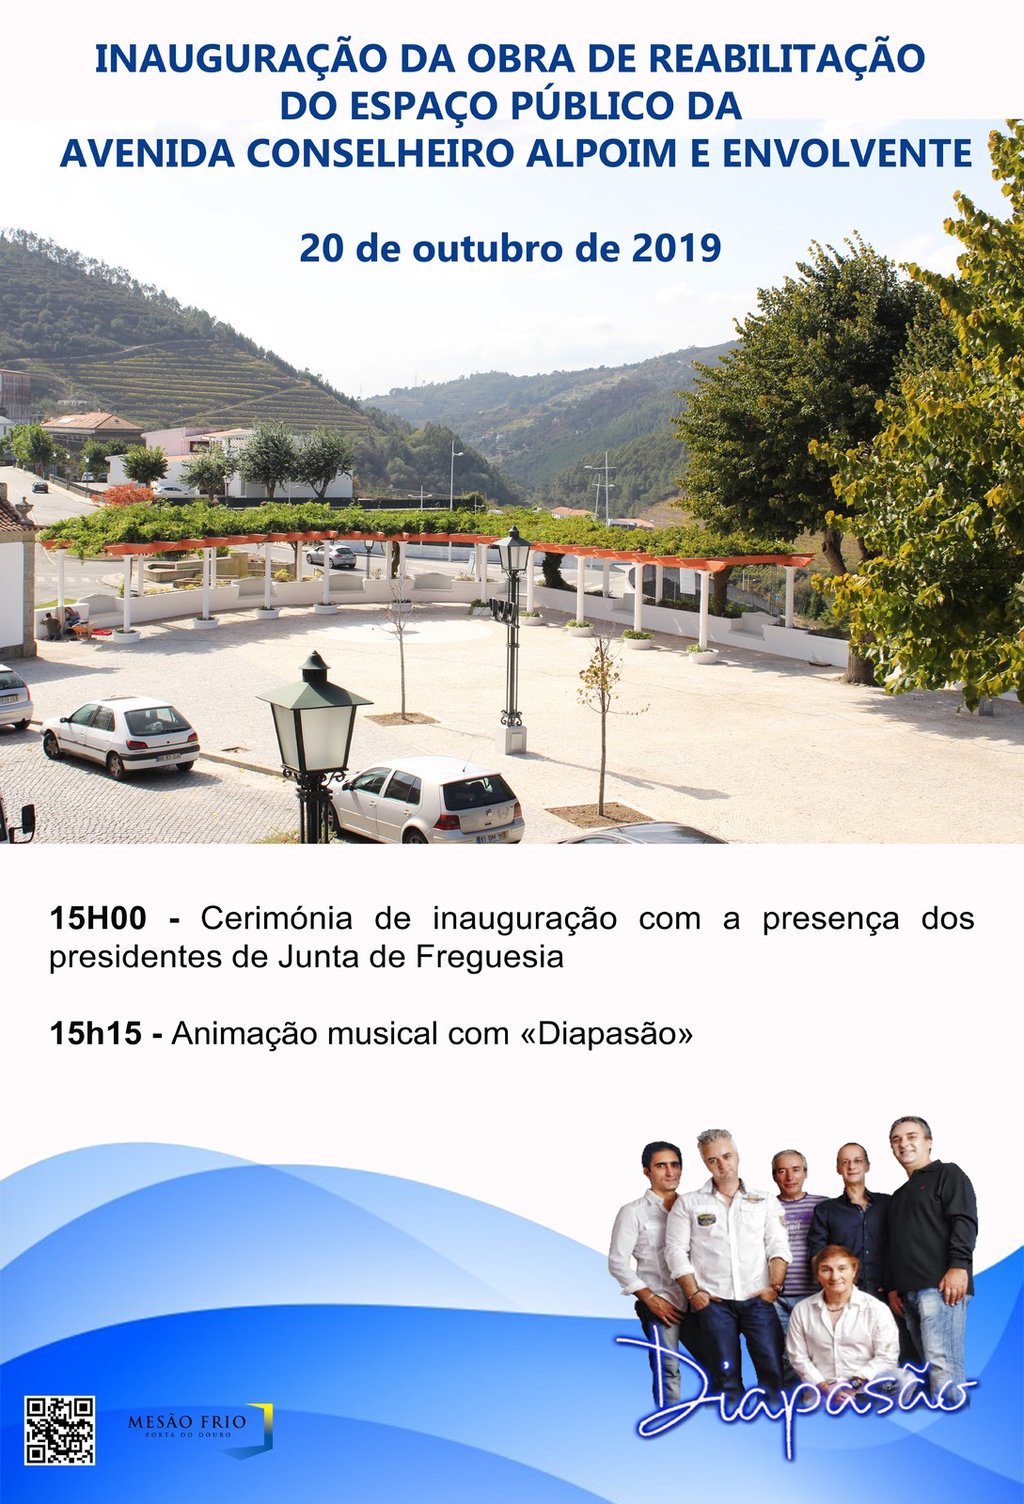 Inauguração da obra de reabilitação do espaço público da Avenida Conselheiro Alpoim e envolvente